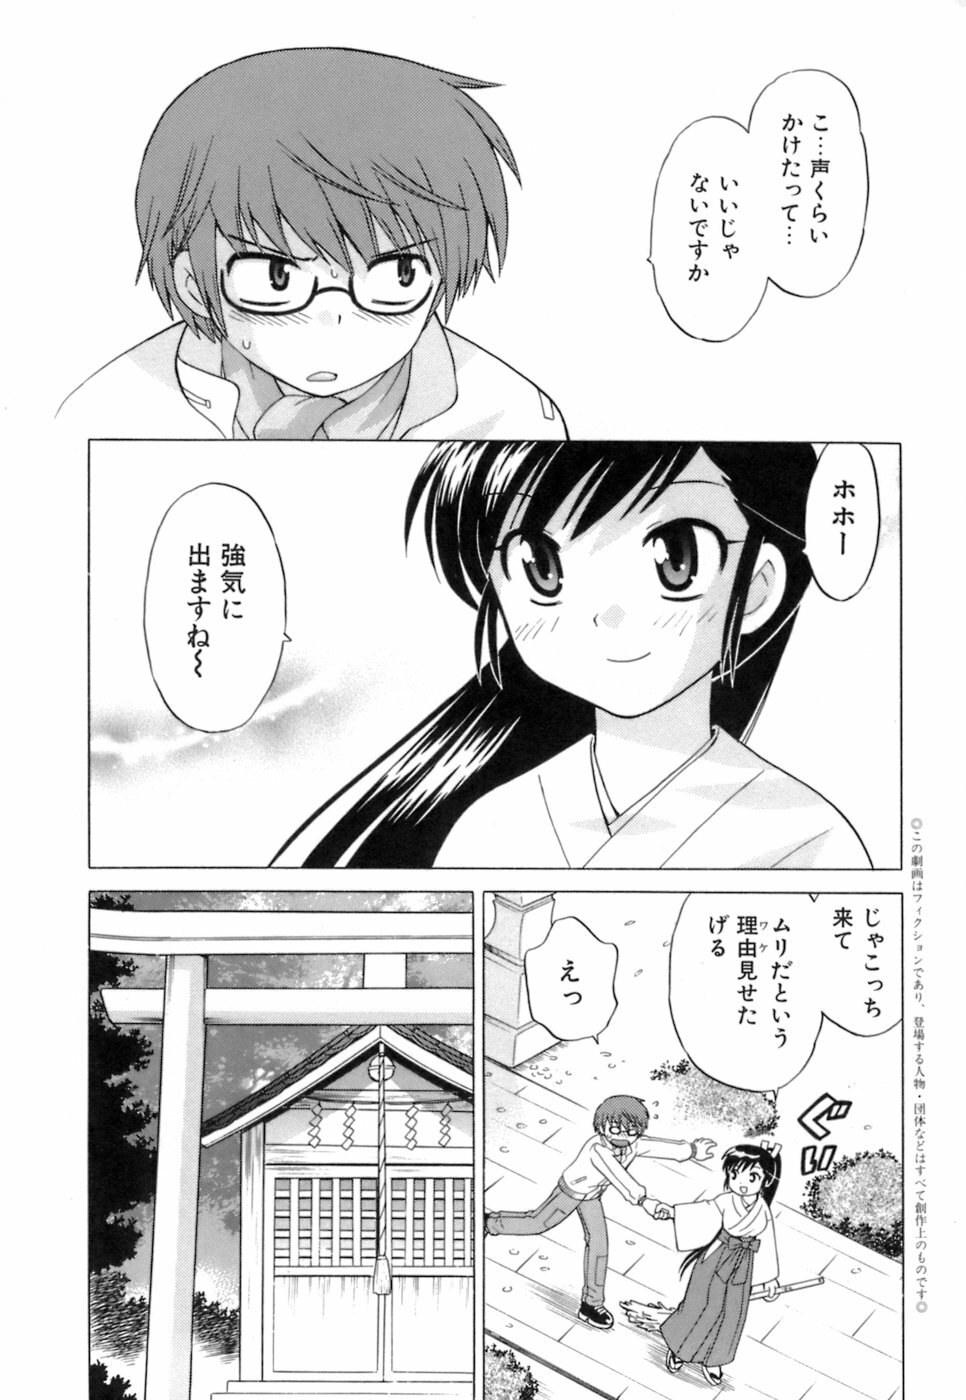 [Kotono Wakako] Miko Moe 1 page 16 full